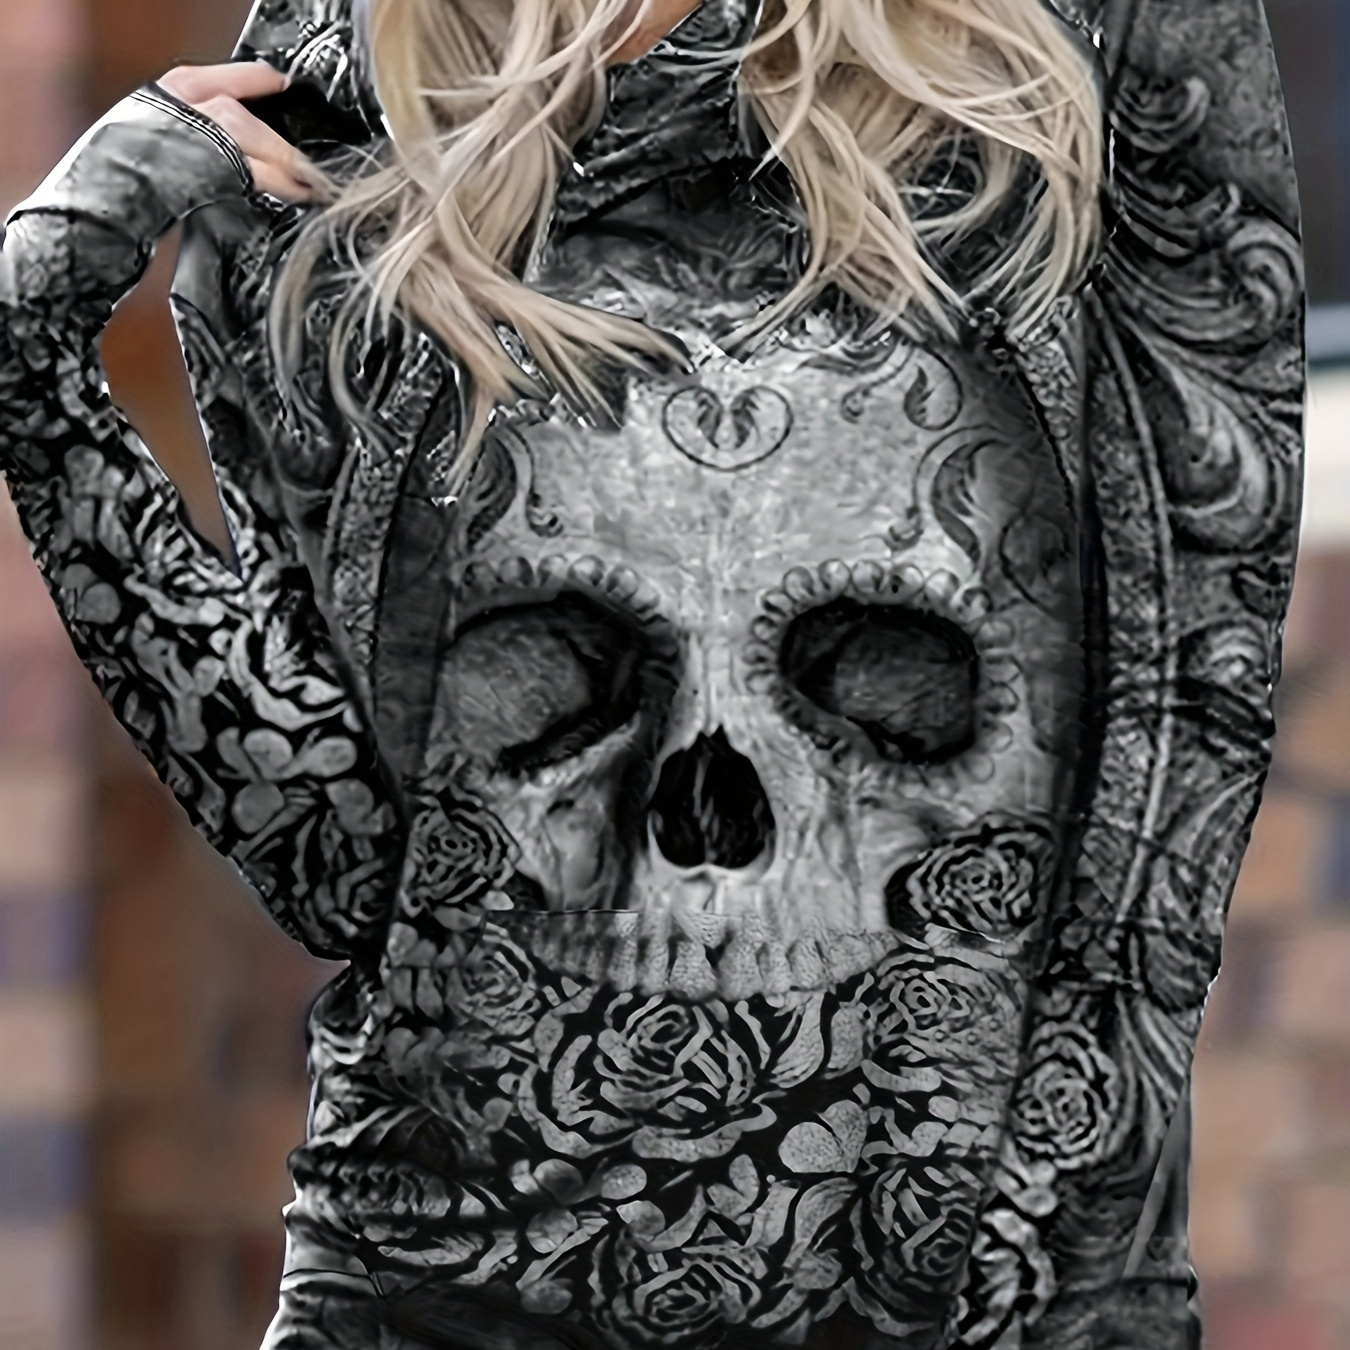 

Floral Skull Print Hoodie, Gothic Loose Kangaroo Pocket Hoodies Sweatshirt, Women's Clothing